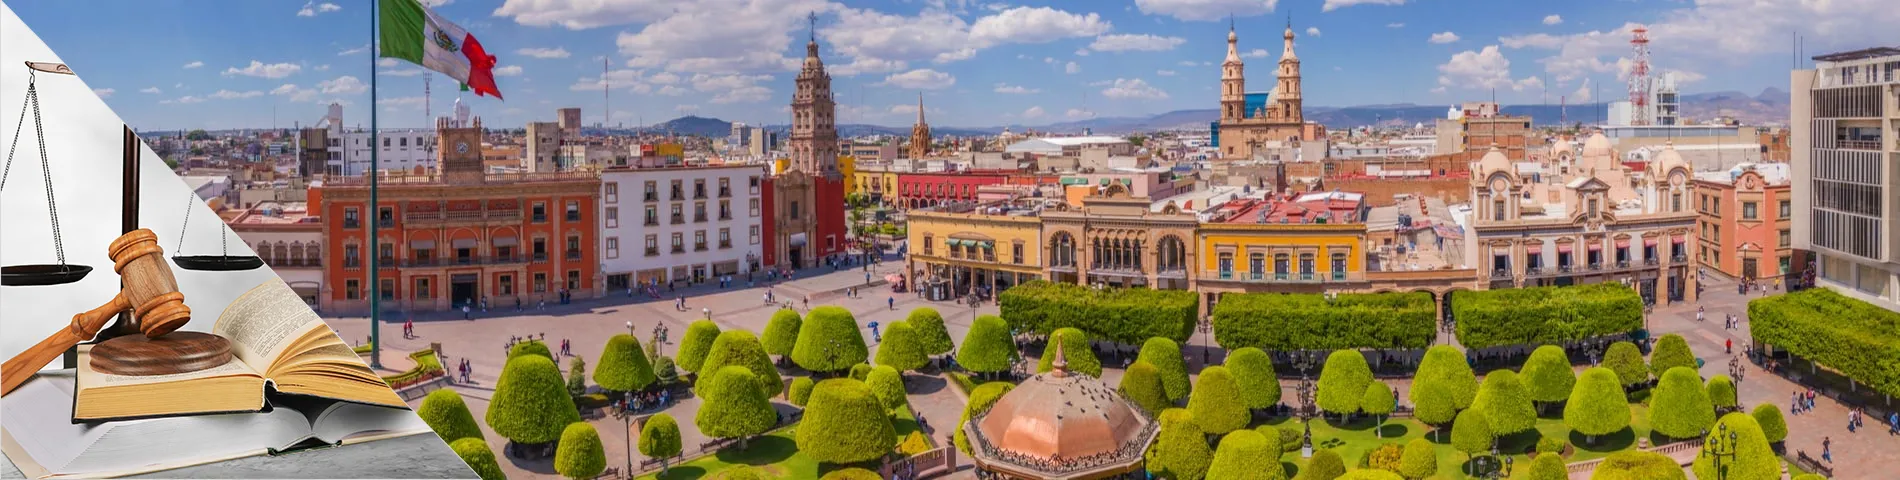 Guanajuato - Spanska och lag